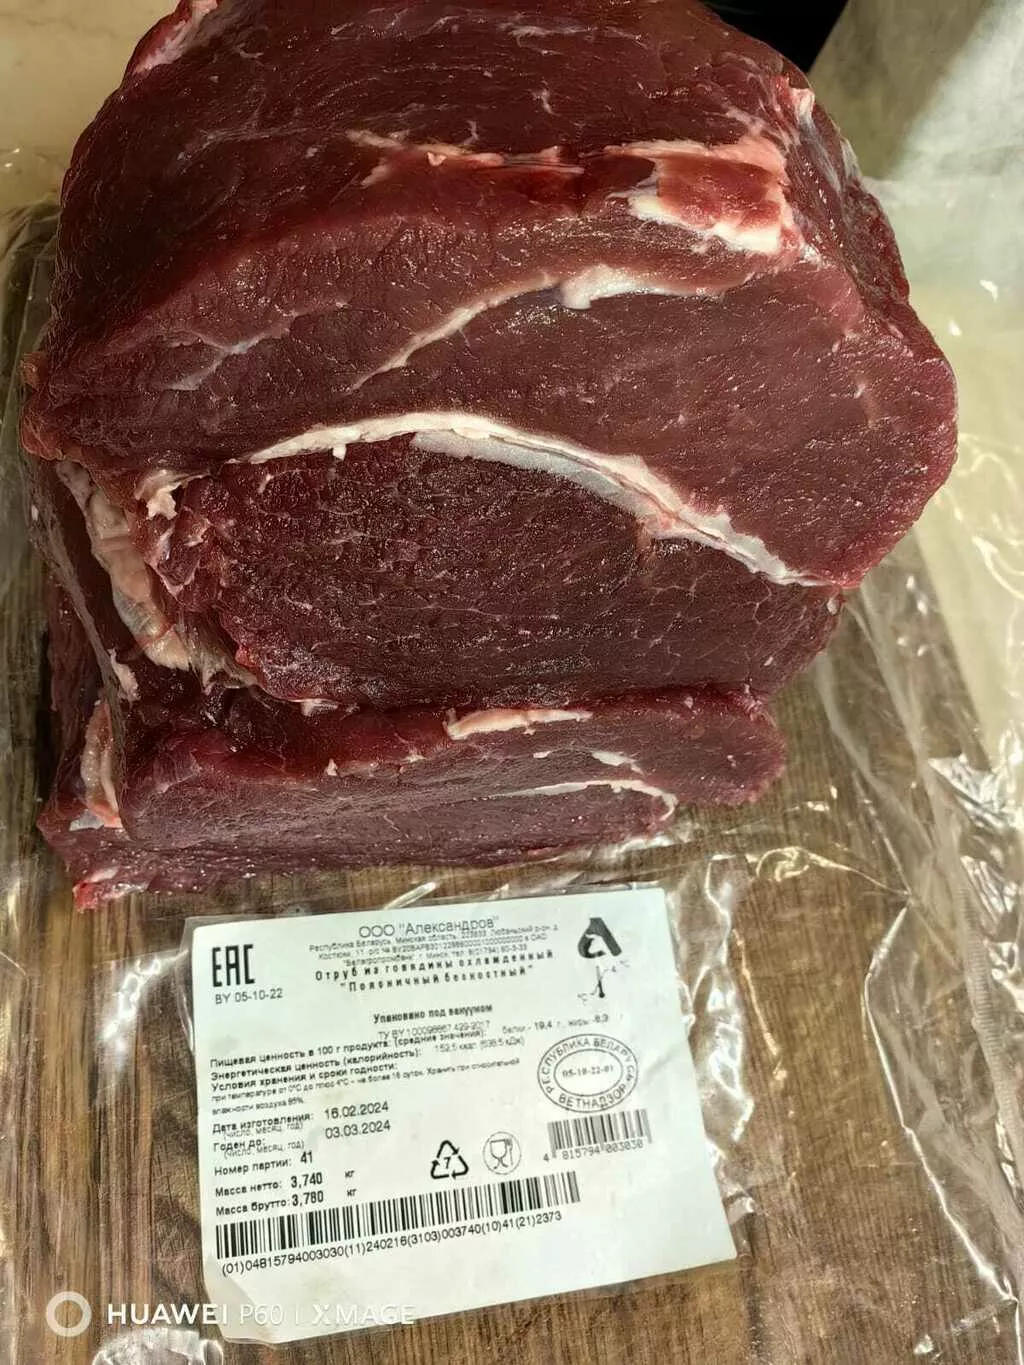 мясо быка говядина беларусь на побережье в Краснодаре и Краснодарском крае 4